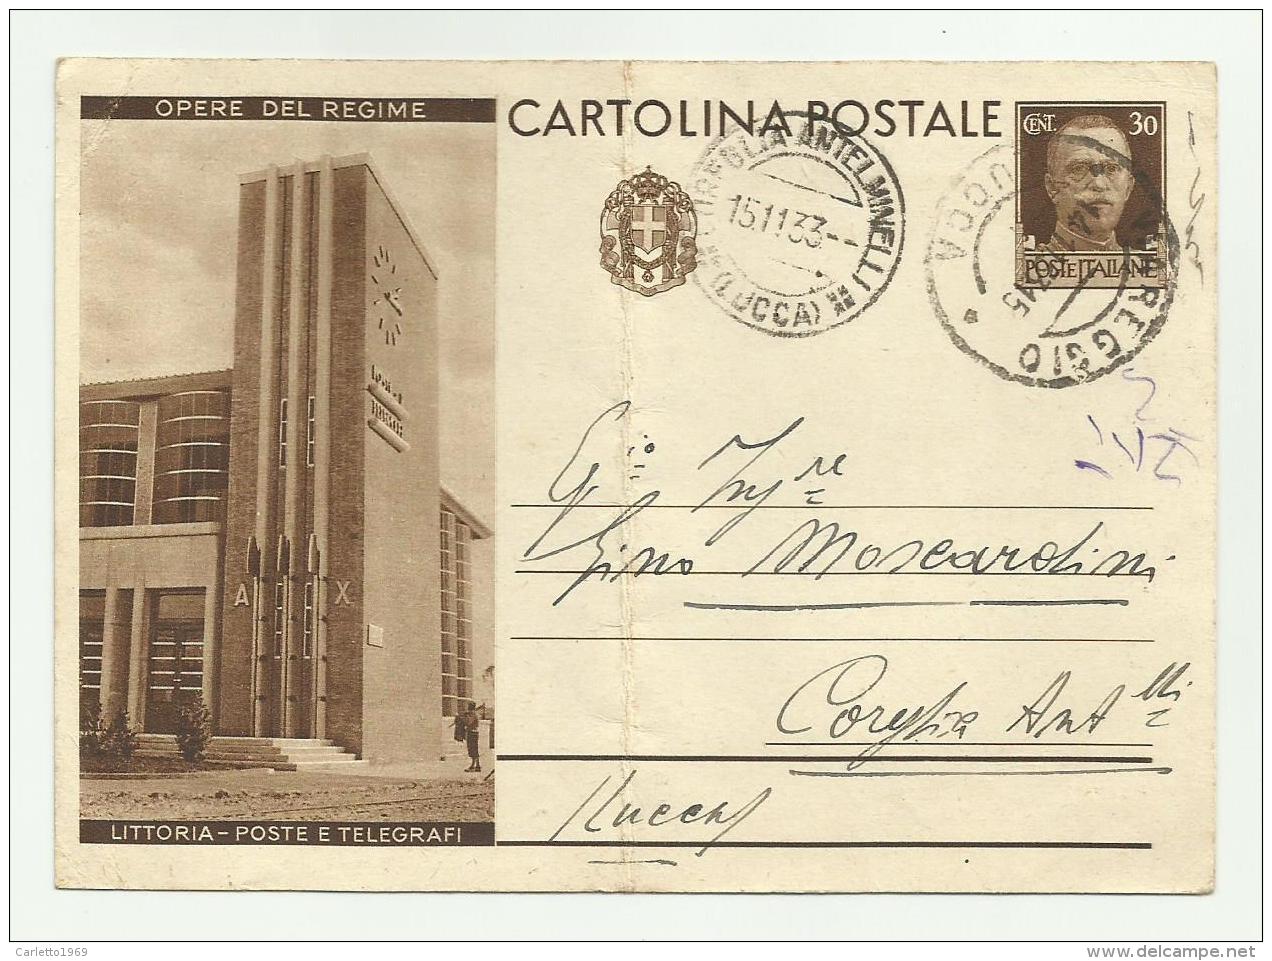 CARTOLINA INTERO  POSTALE - OPERE DEL REGIME  LITTROIA POSTE E TELEGRAFI  1933   VIAGGIATA FG ( PIEGA AL CENTRO ) - Ganzsachen